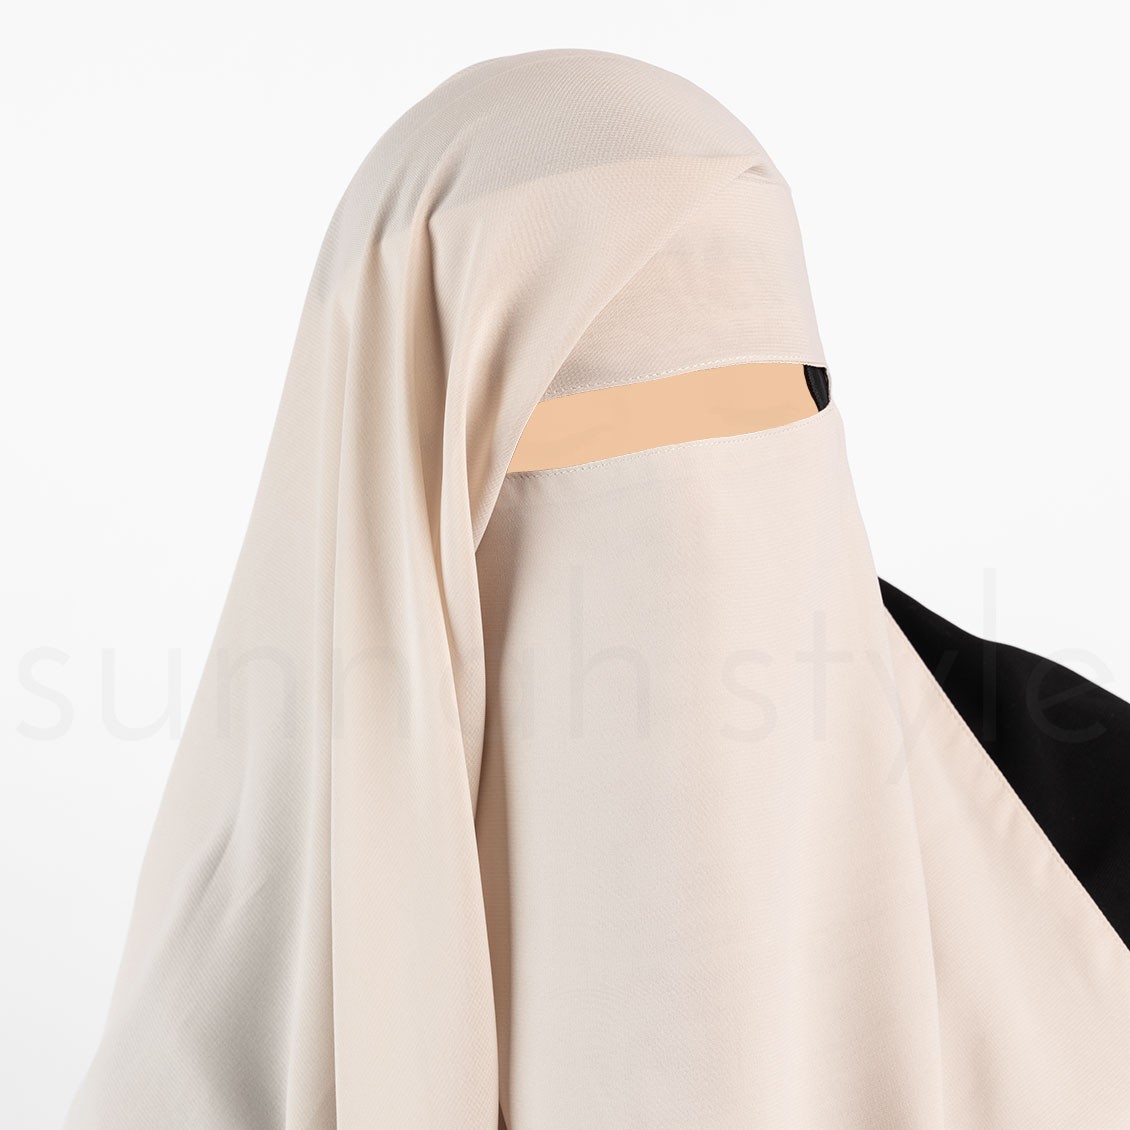 Sunnah Style Narrow No-Pinch Two Layer Niqab Sahara